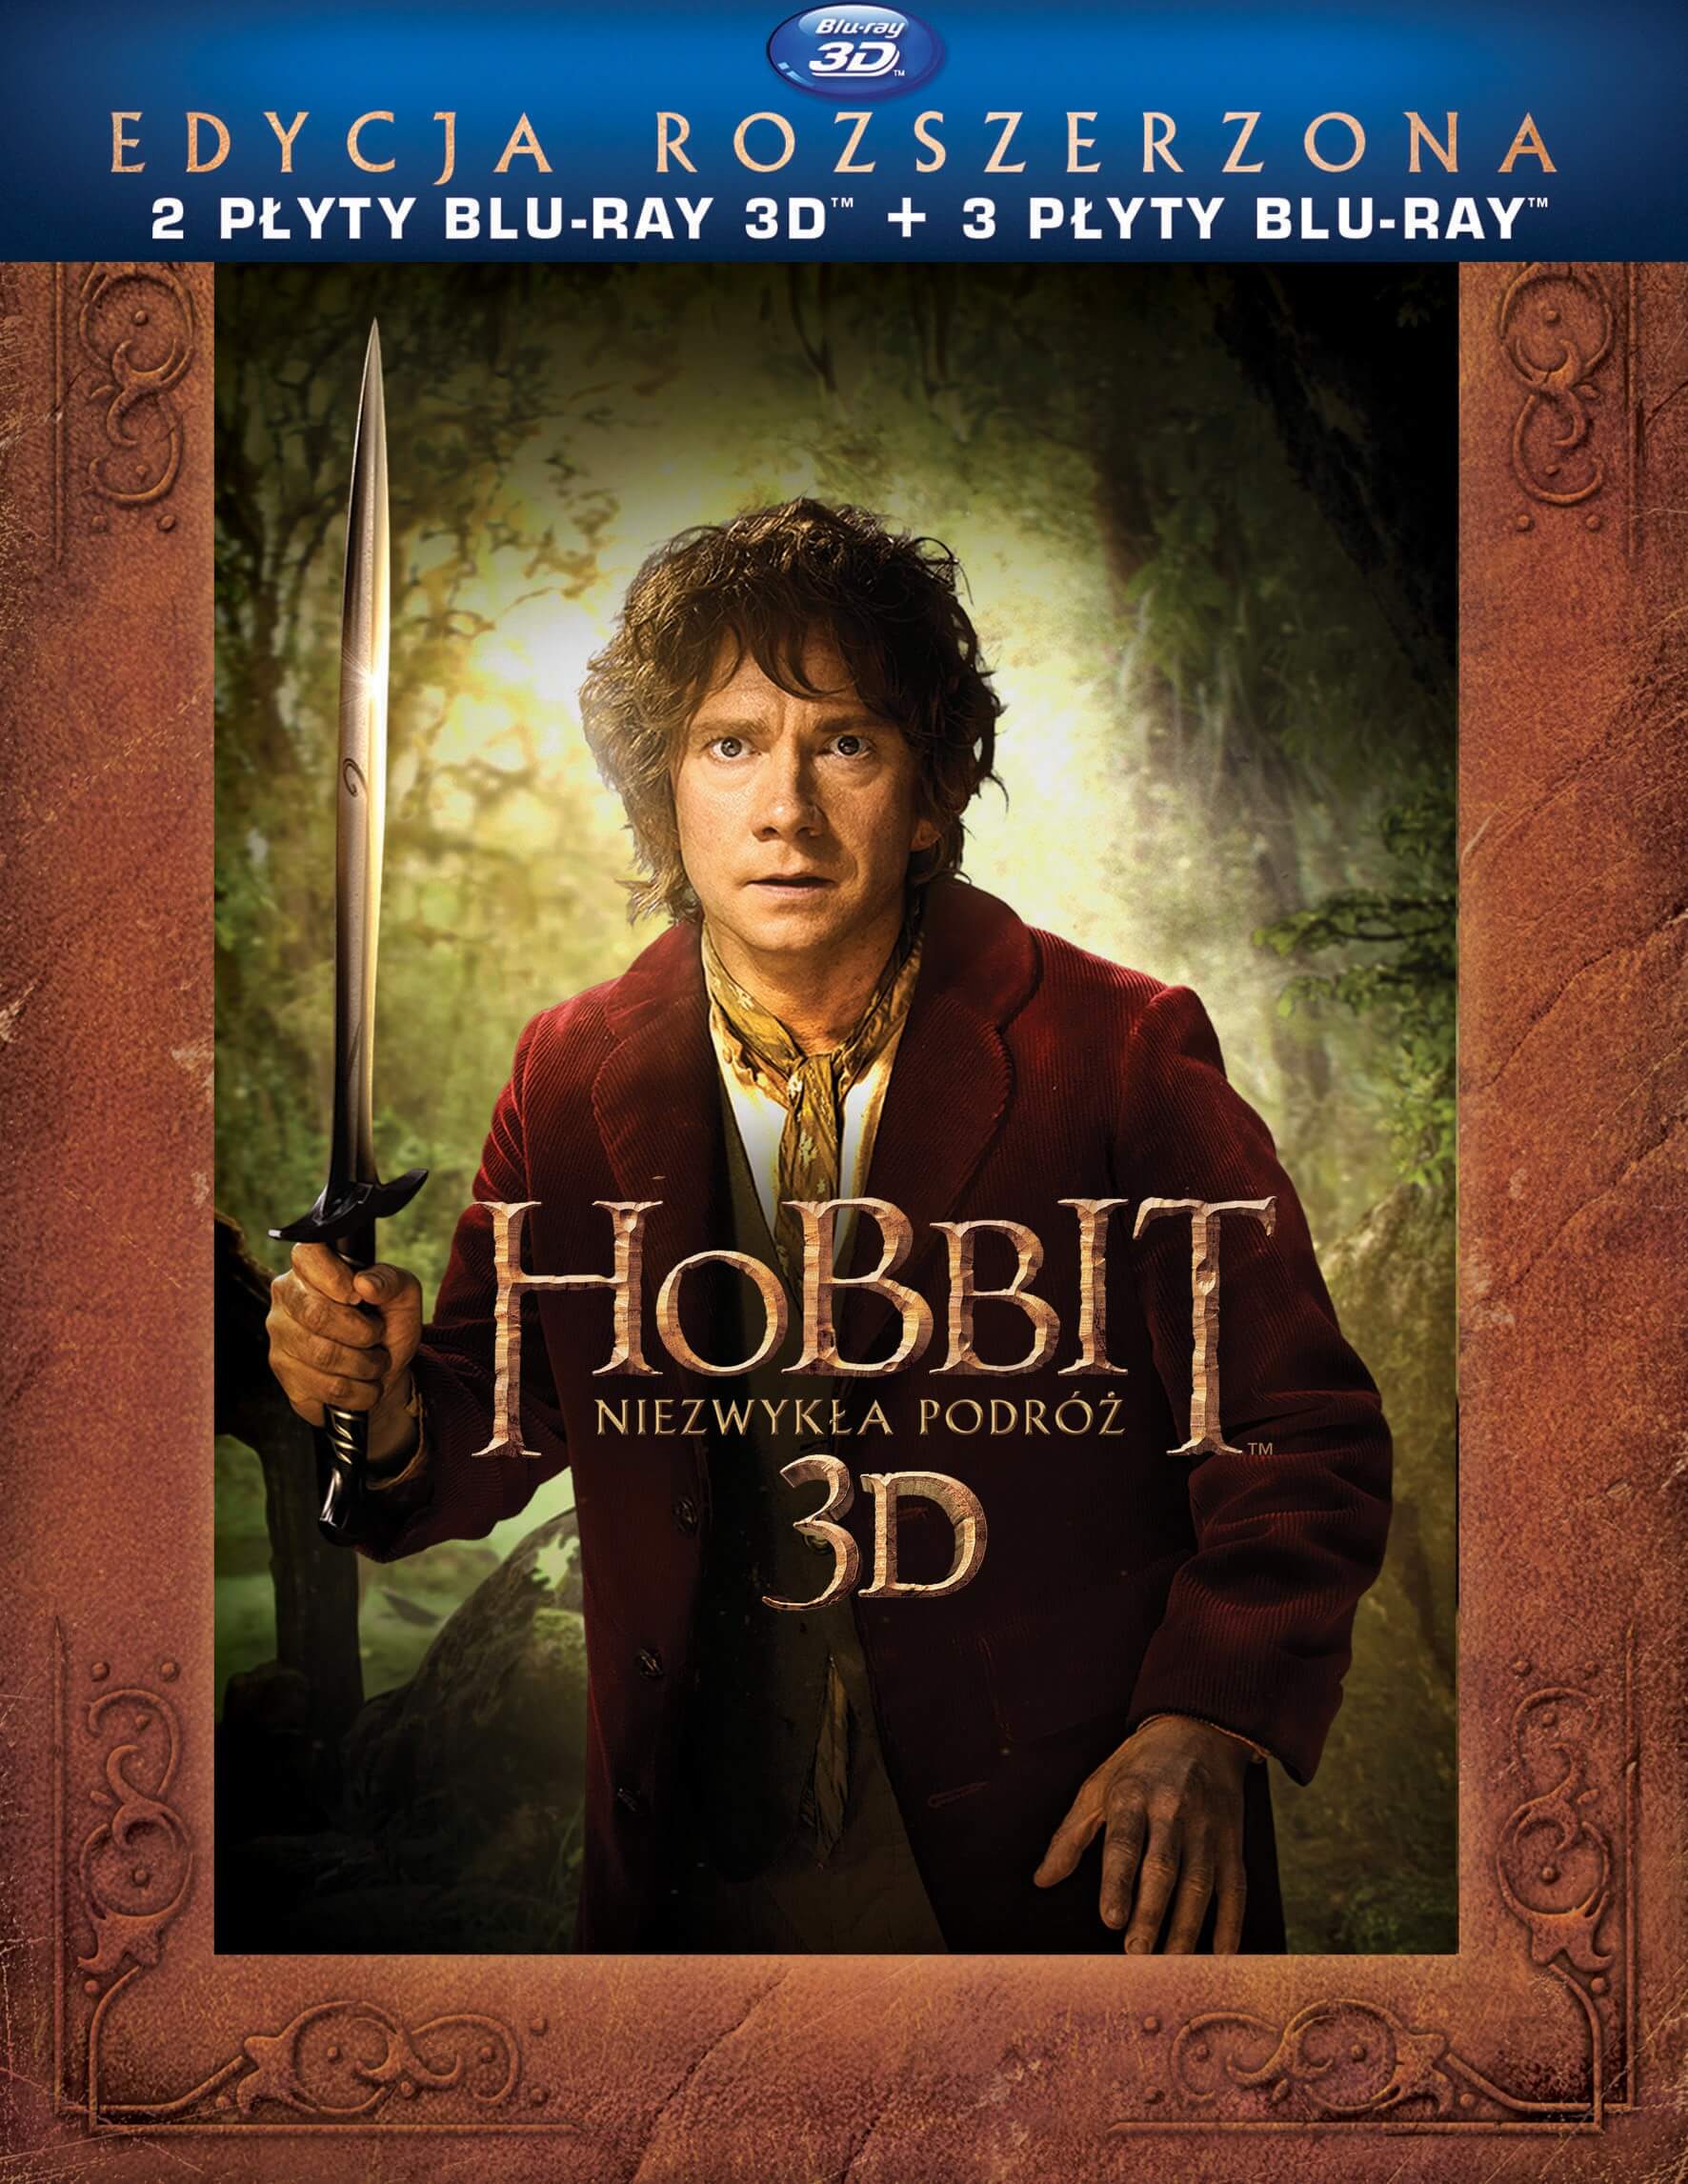 Hobbit: Niezwykła podróż edycja rozszerzona Blu-ray